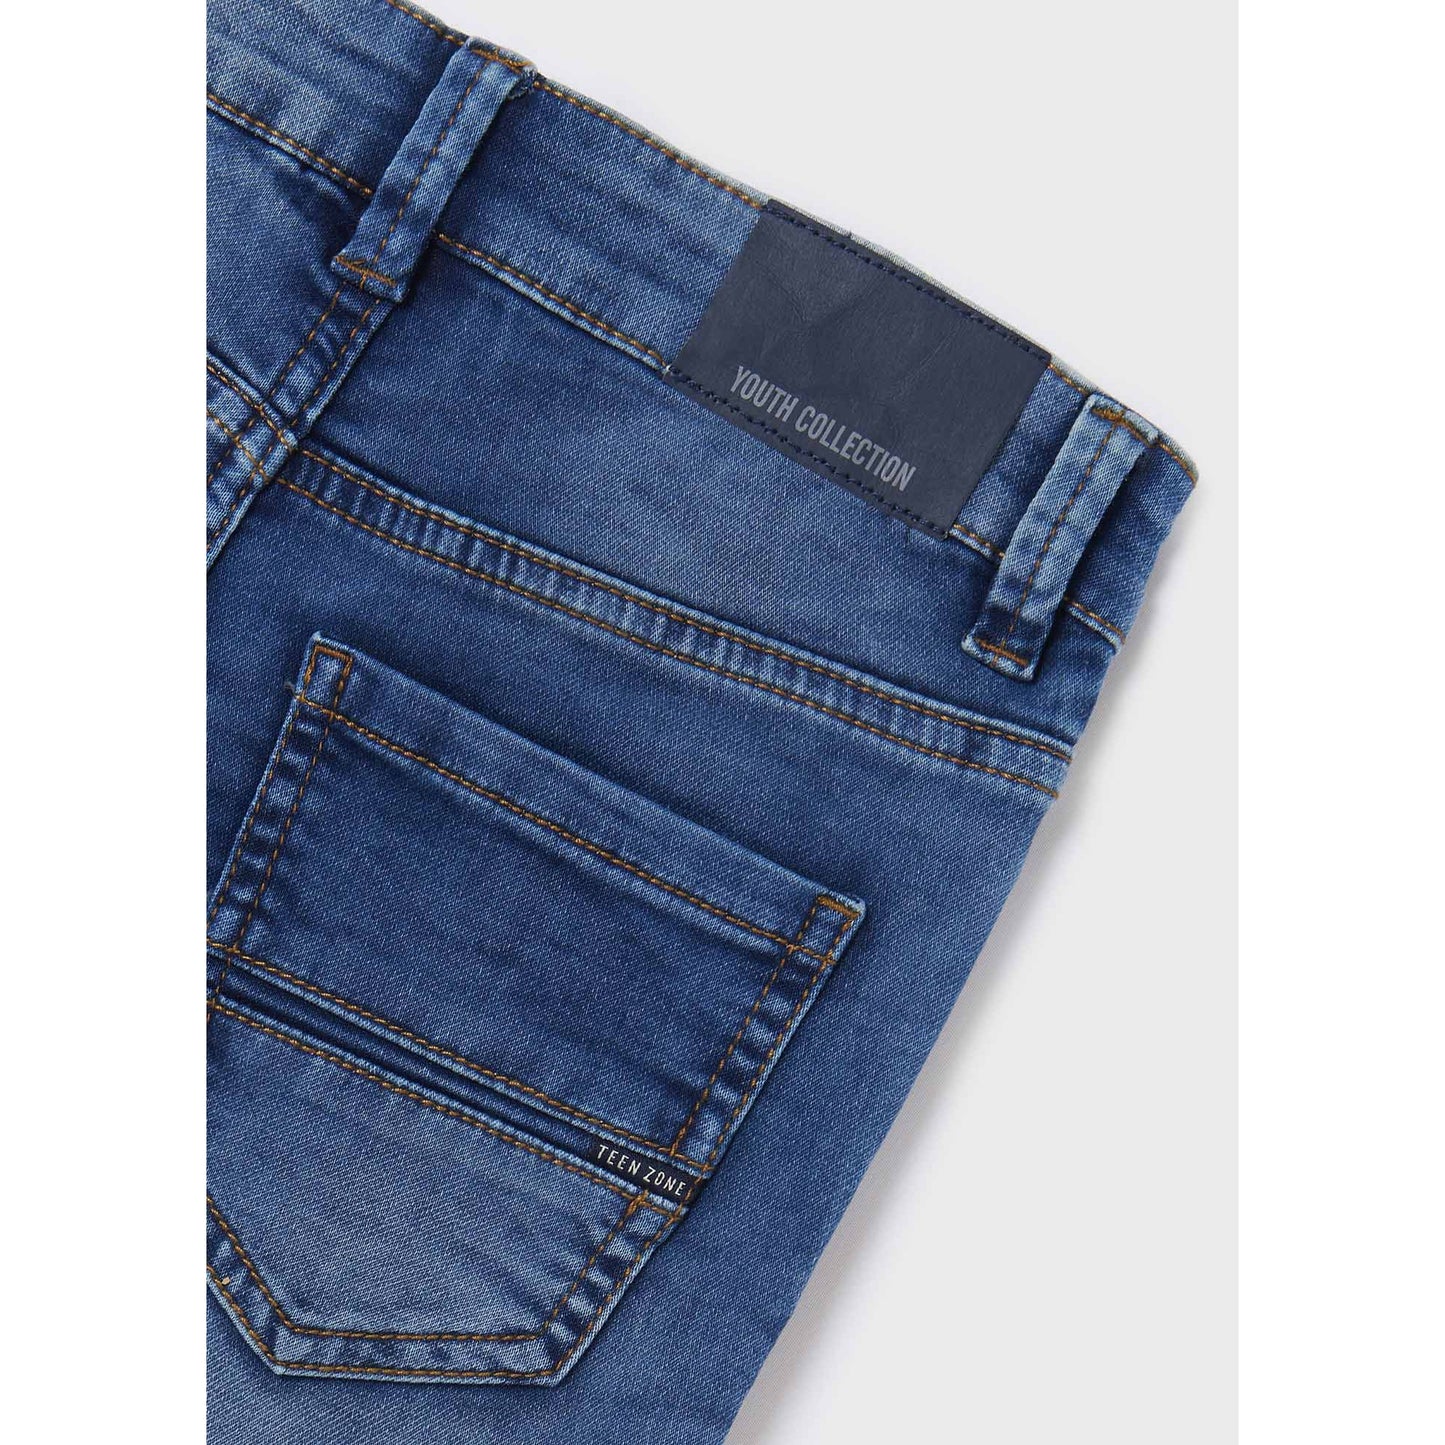 Nukutavake Bermuda Soft Denim Shorts _Medium Blue 6214-68